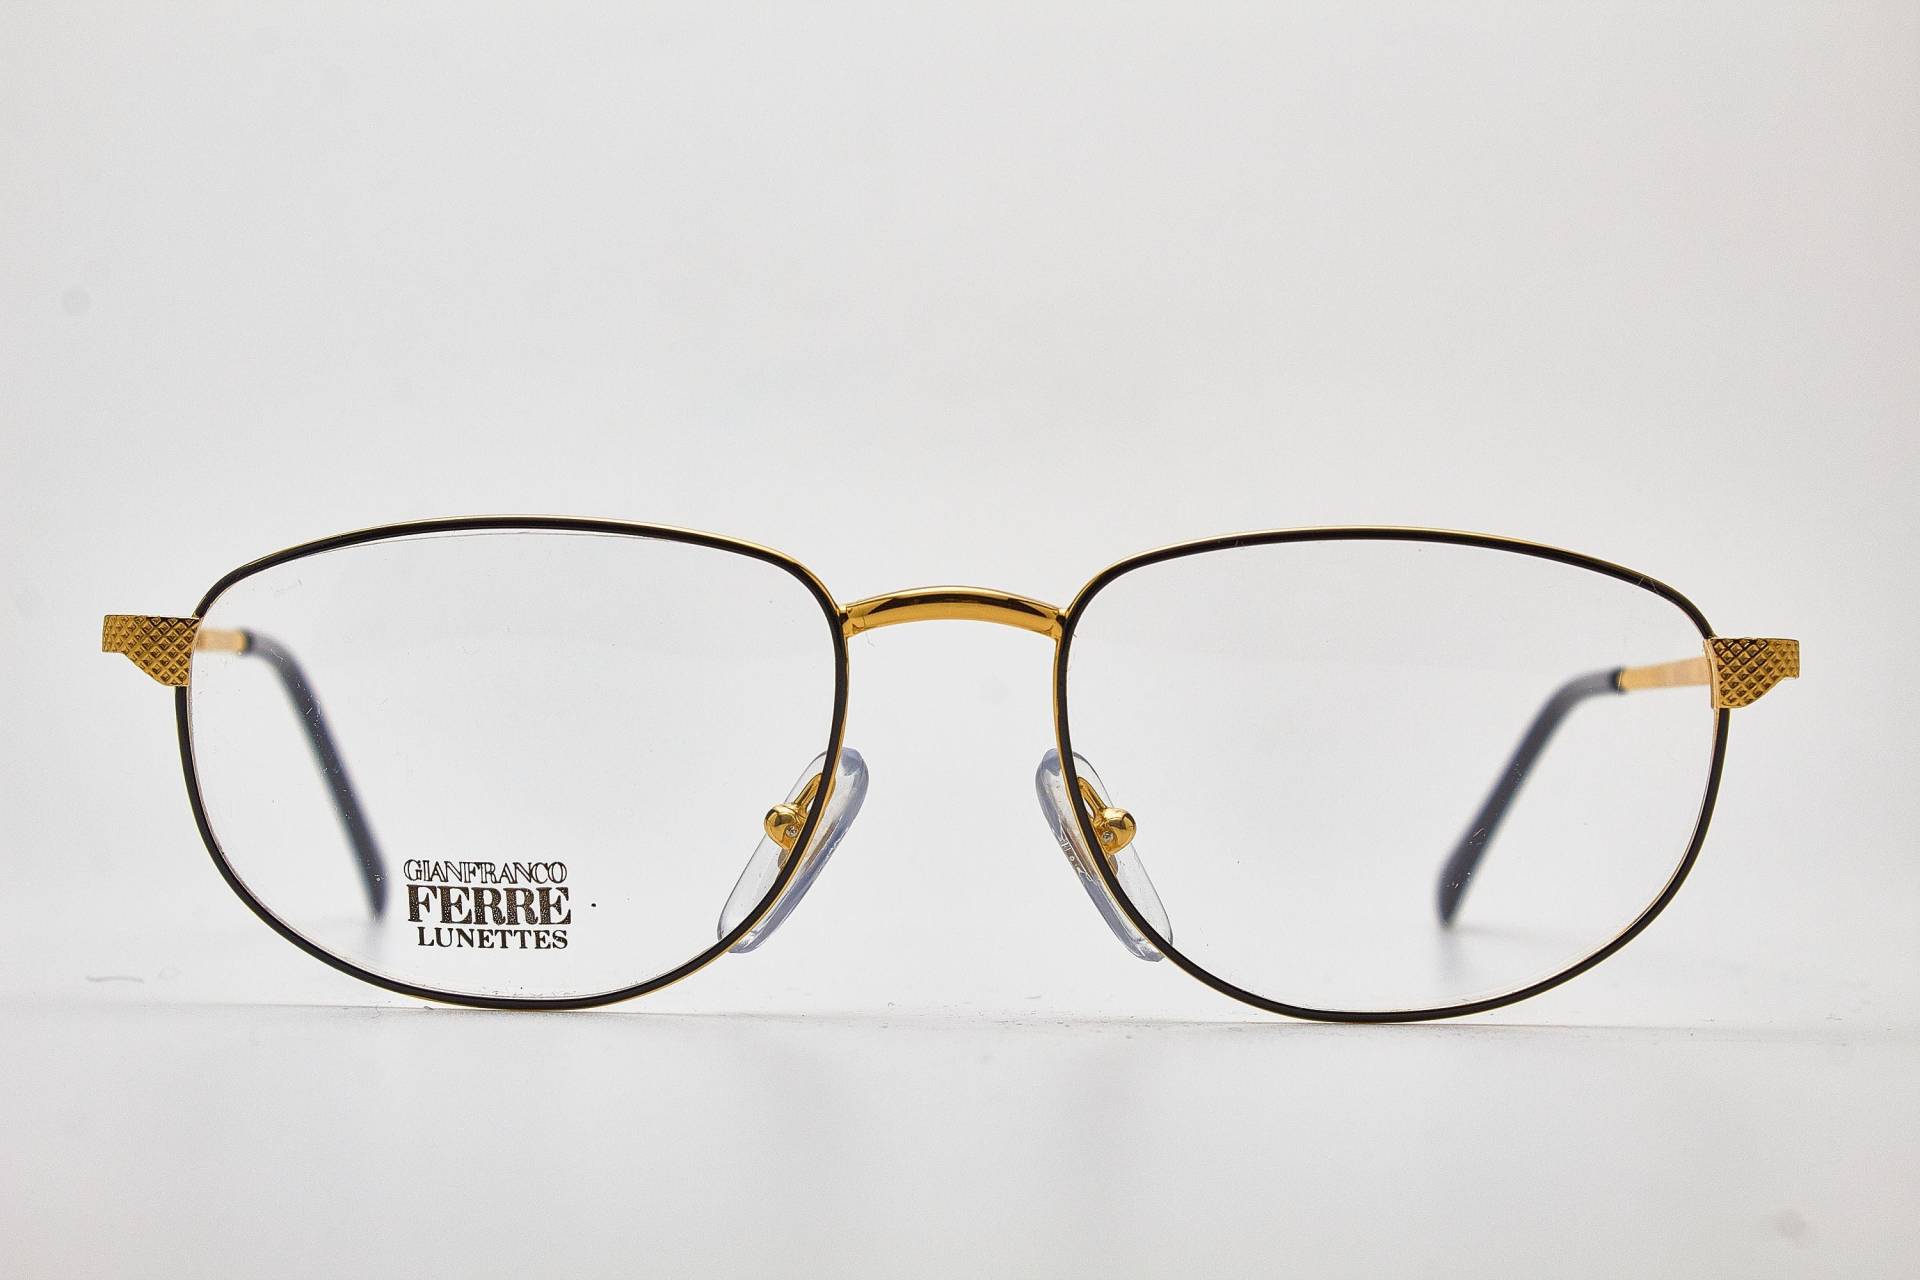 Gianfranco Ferre Gff151 Schwarz Gold Ovale Fassung/Goldene Brille/ Brille/Vintage Brille/80Er Jahre Sonnenbrille/ Brille 1980Er von VintageGlassesVault